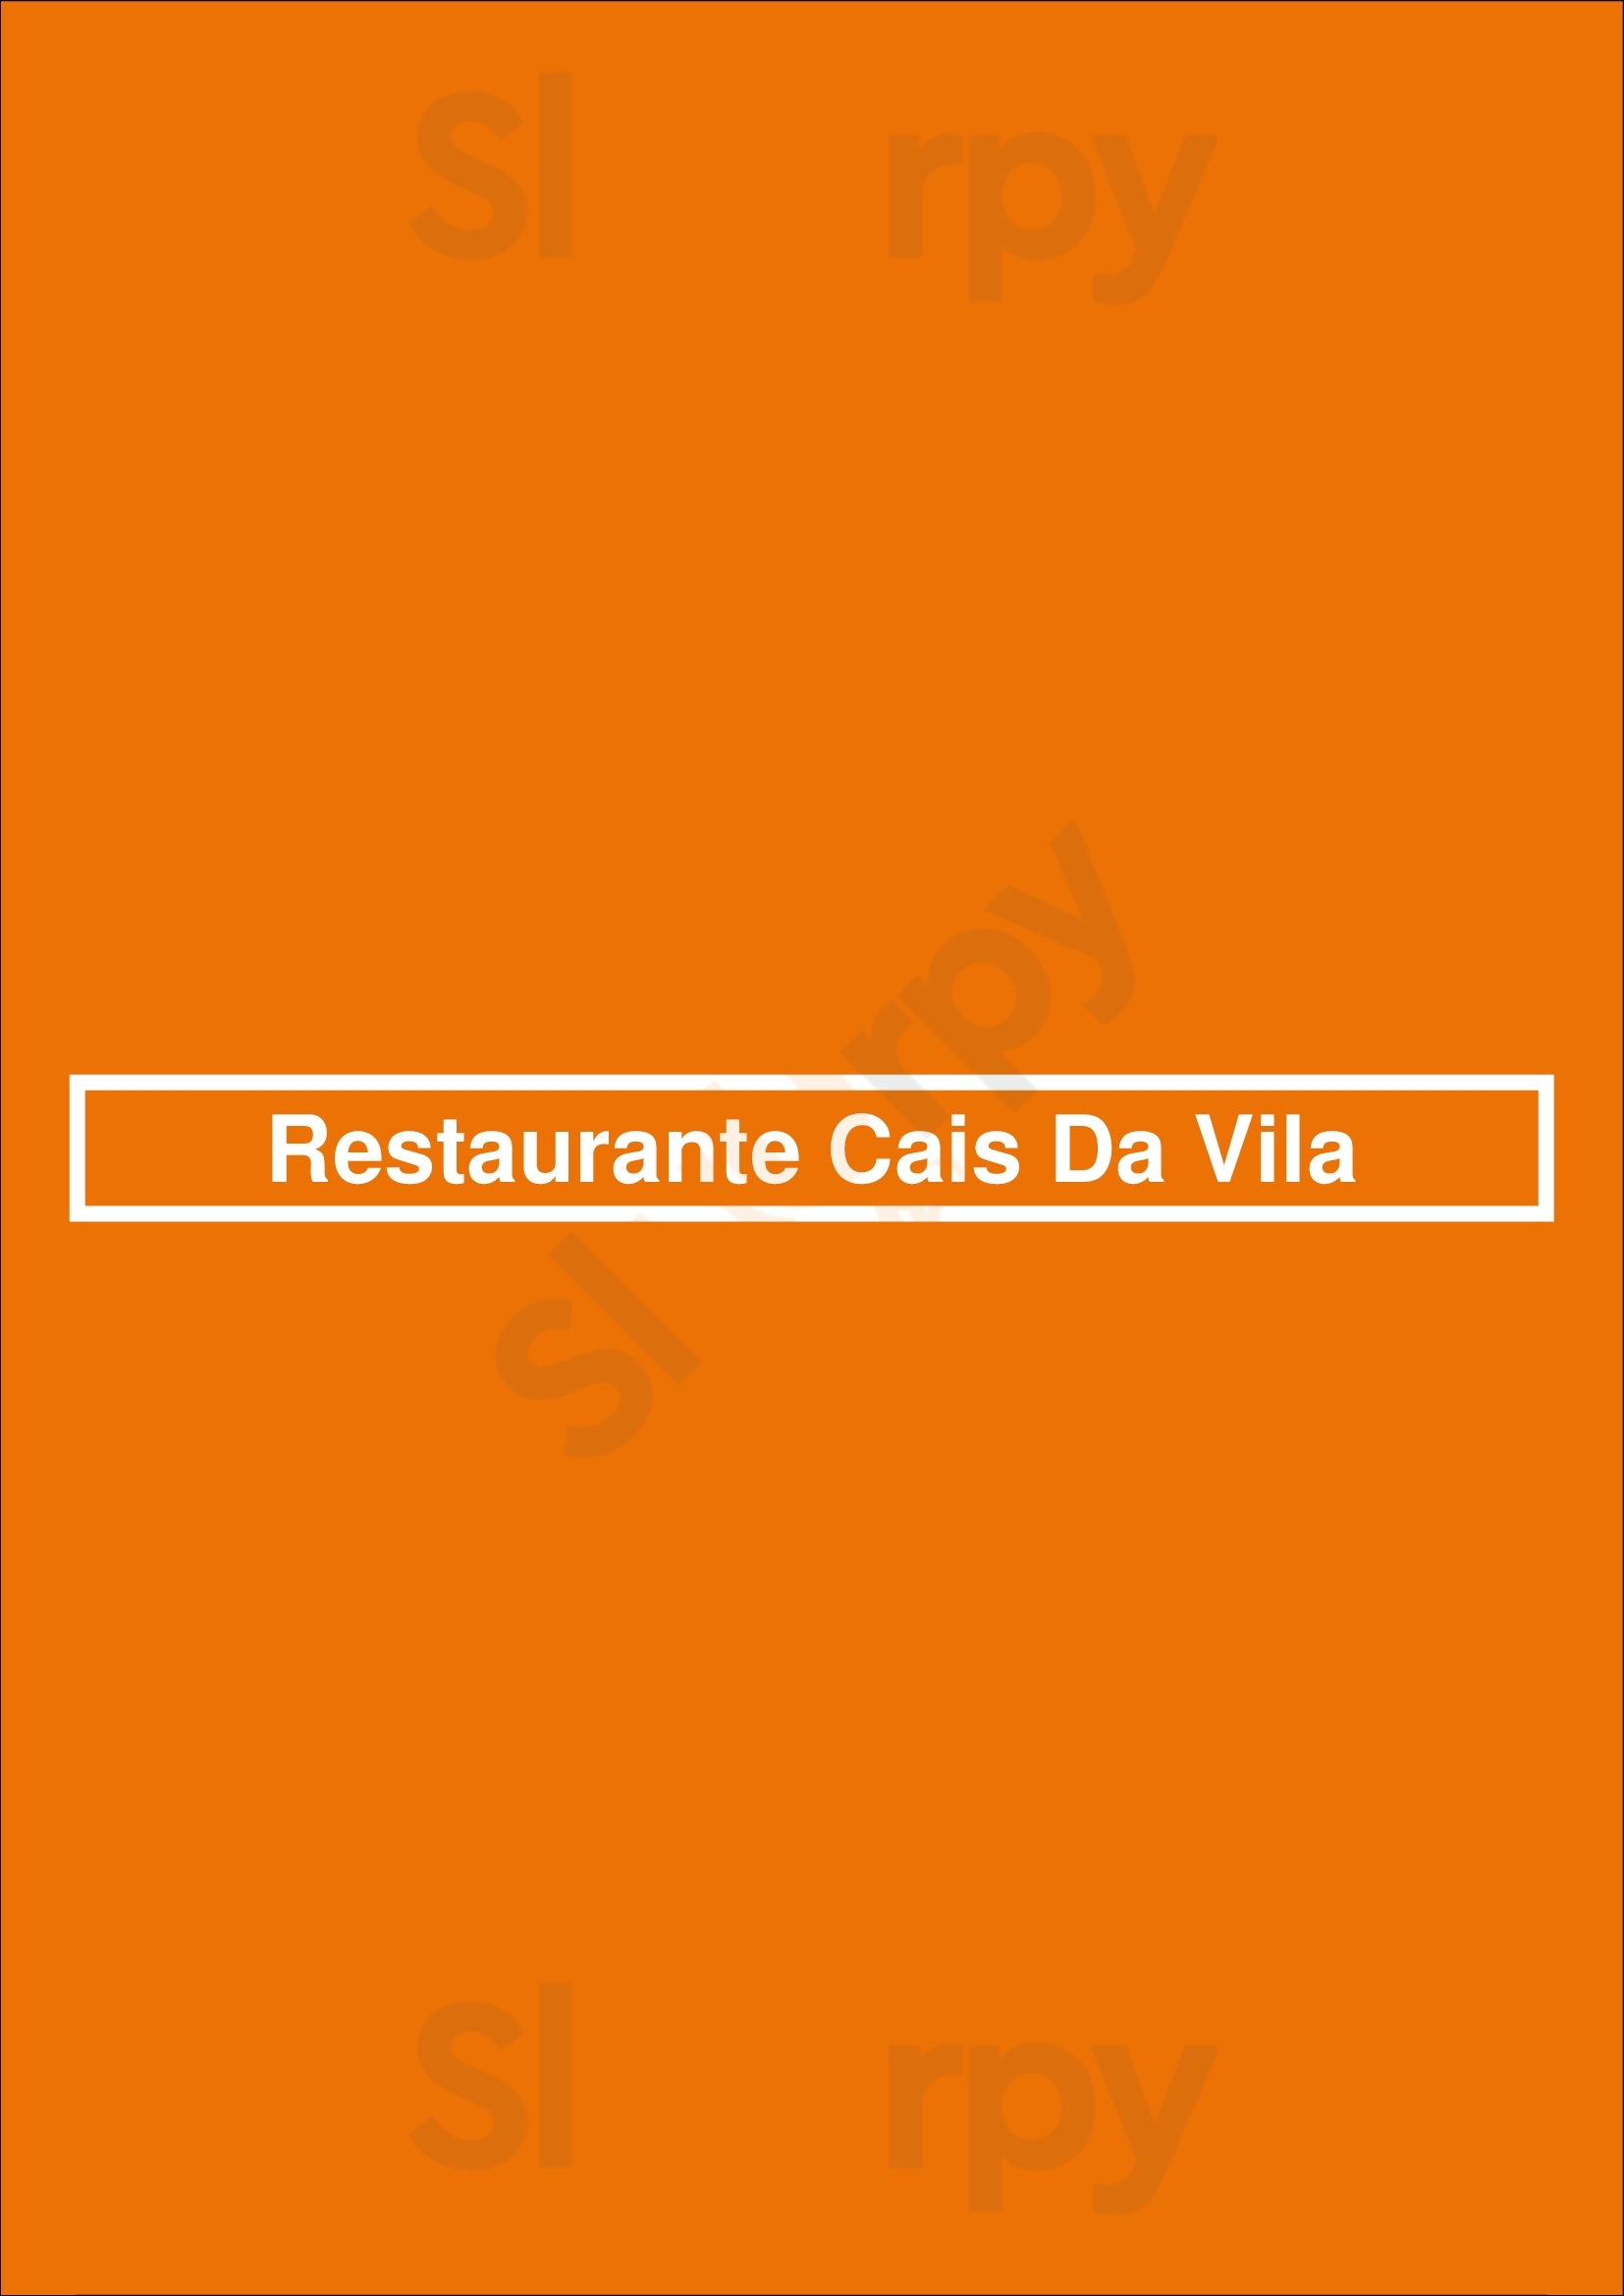 Restaurante Cais Da Vila Vila do Conde Menu - 1